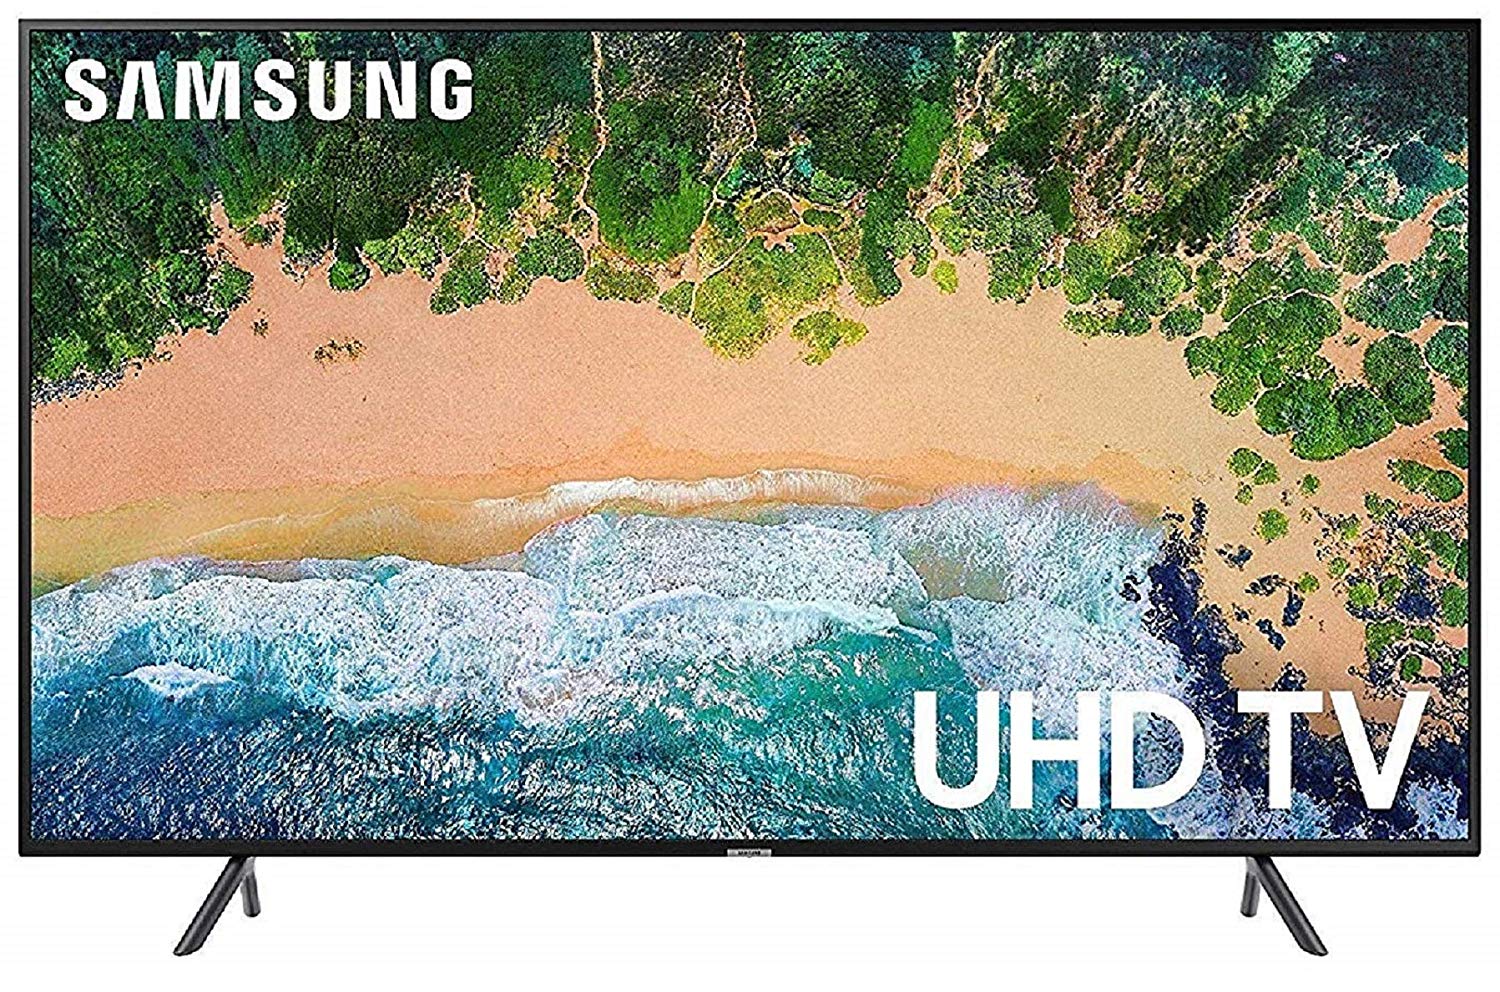 Daftar Harga TV LED 43 Inch Samsung Terbaru Di Indonesia » MENGHADIRKAN